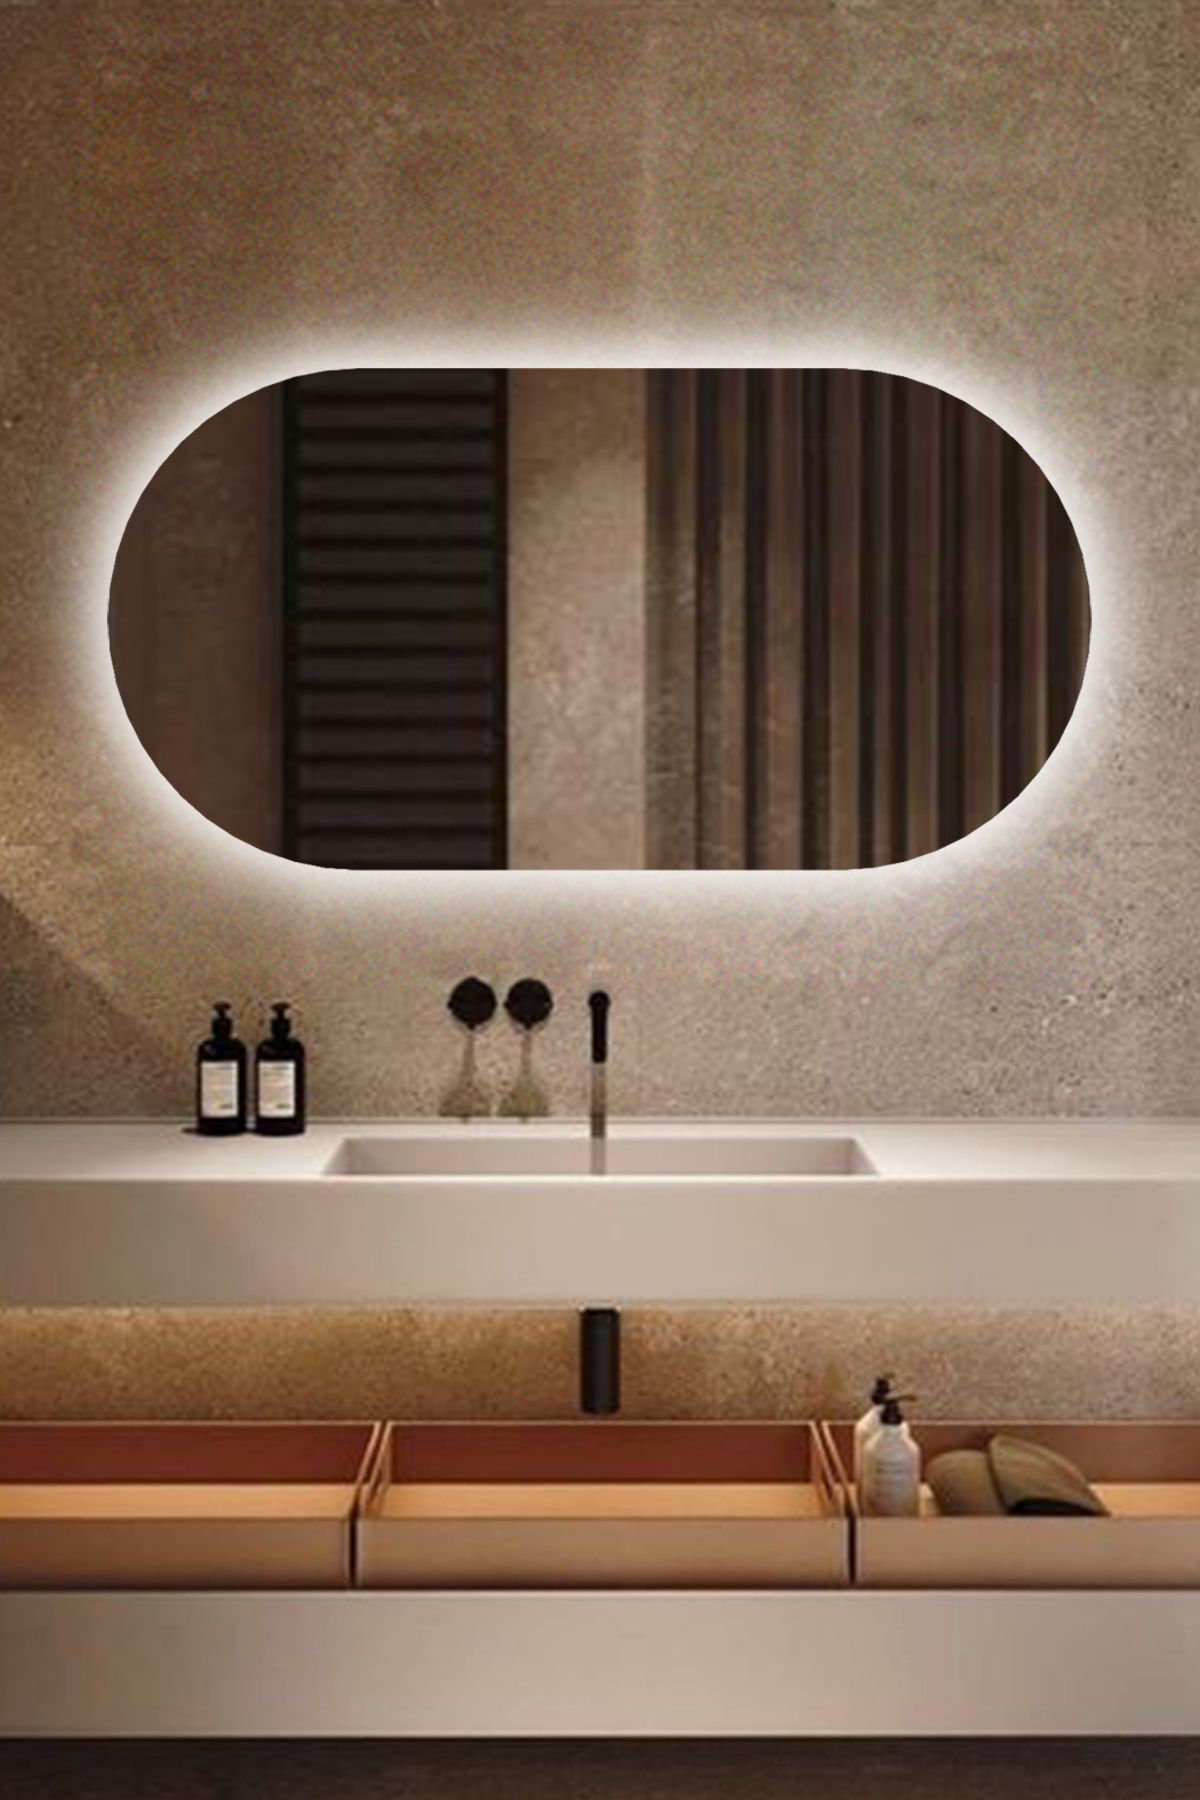 Fawdecor Led Işıklı Oval/Kapsül Model Dekoratif Duvar Aynası, Modern Eşsiz Ayna, Ayna Duvar Dekorasyon Ürünü